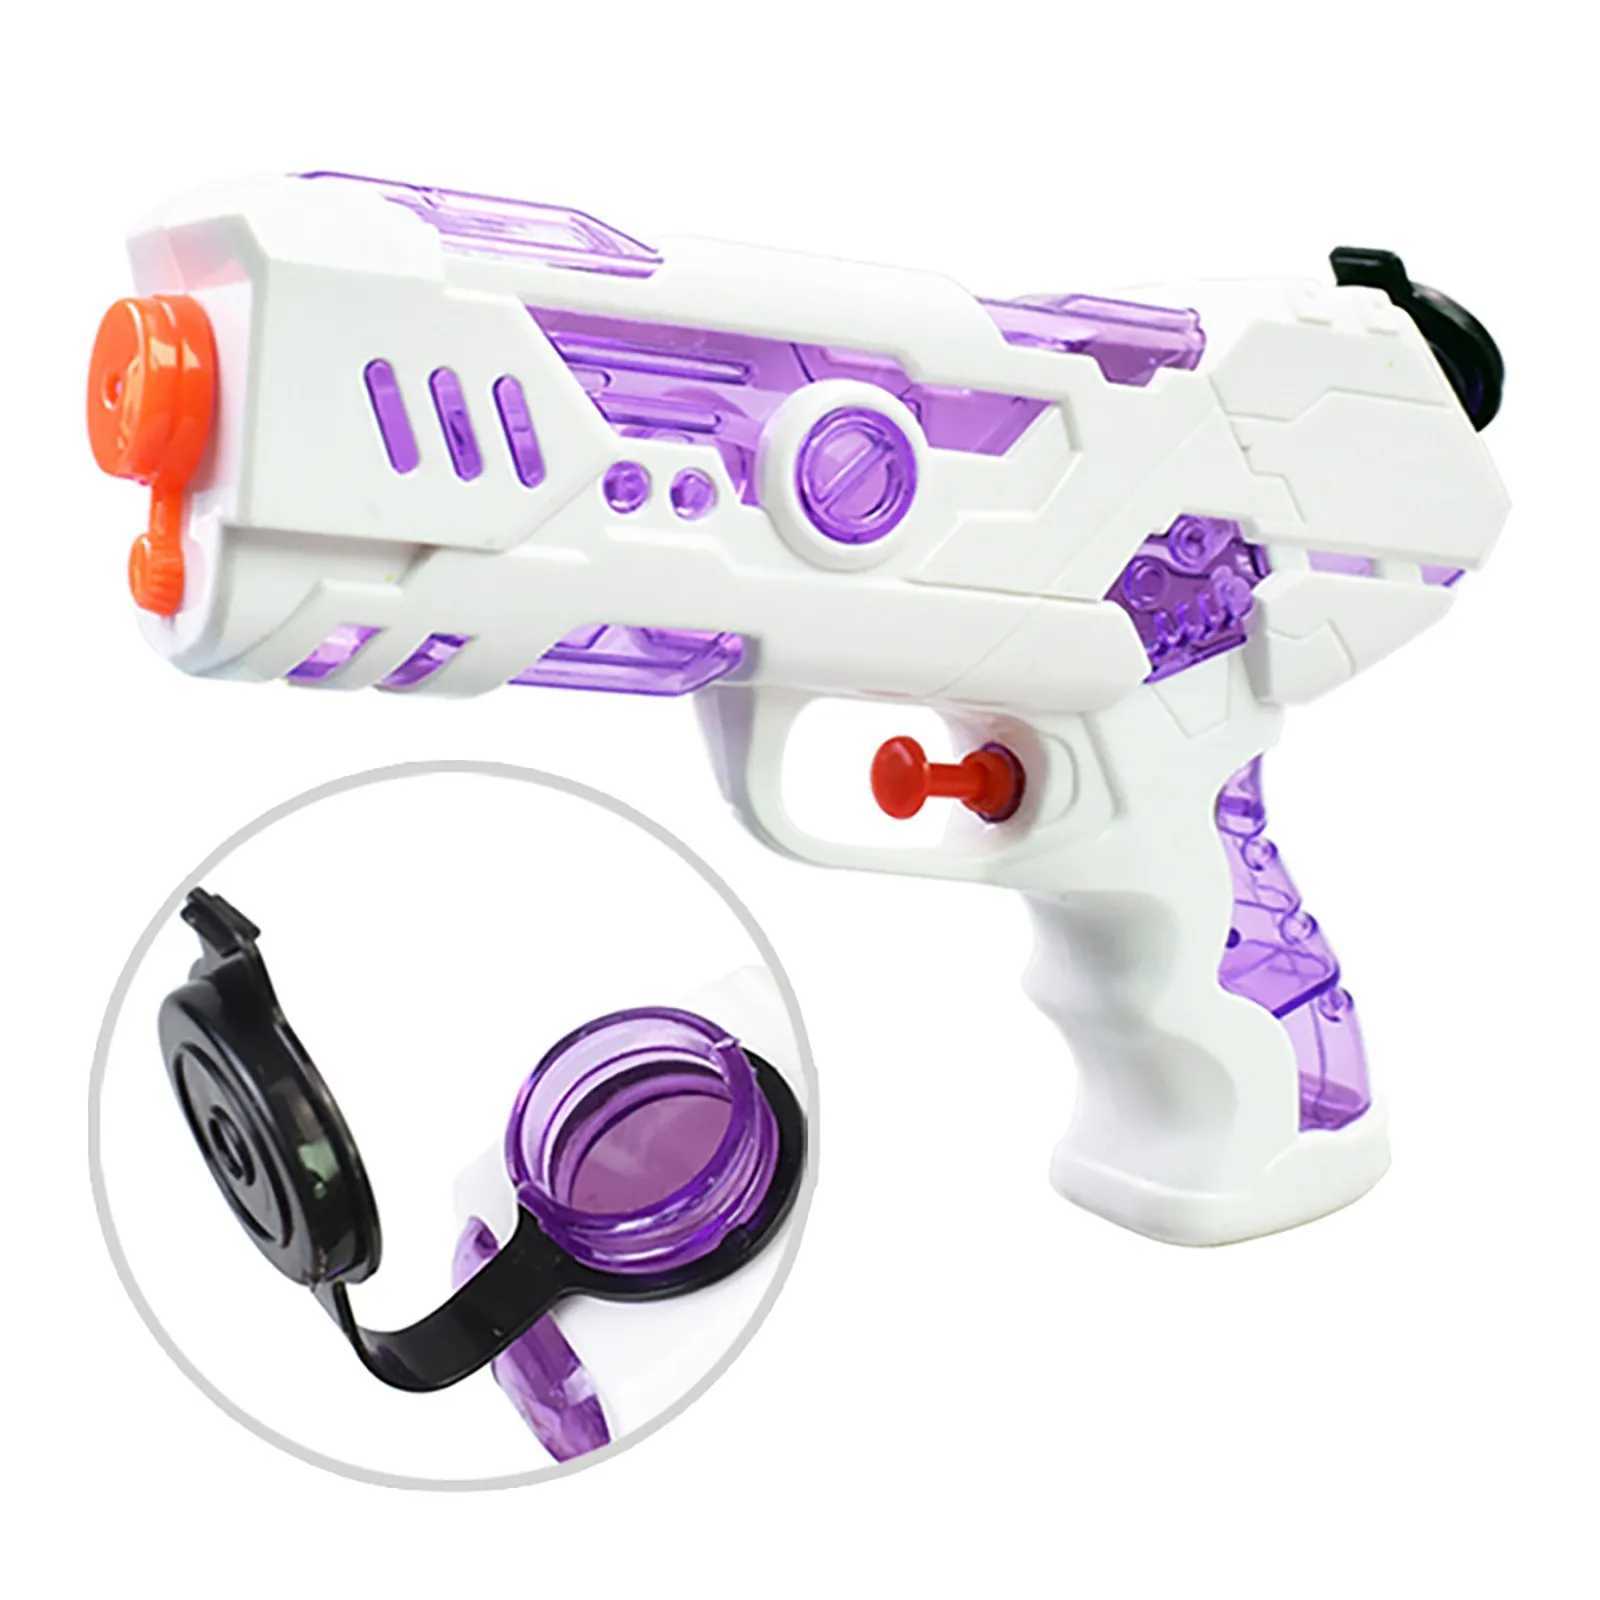 Giocattoli da arma da fuoco giocattoli bambini Super Soaker Water-Water Squirt Guns-Shooter Water Blaster bambini Gift divertenti Brinquedos Infantil Meninal2404L2404